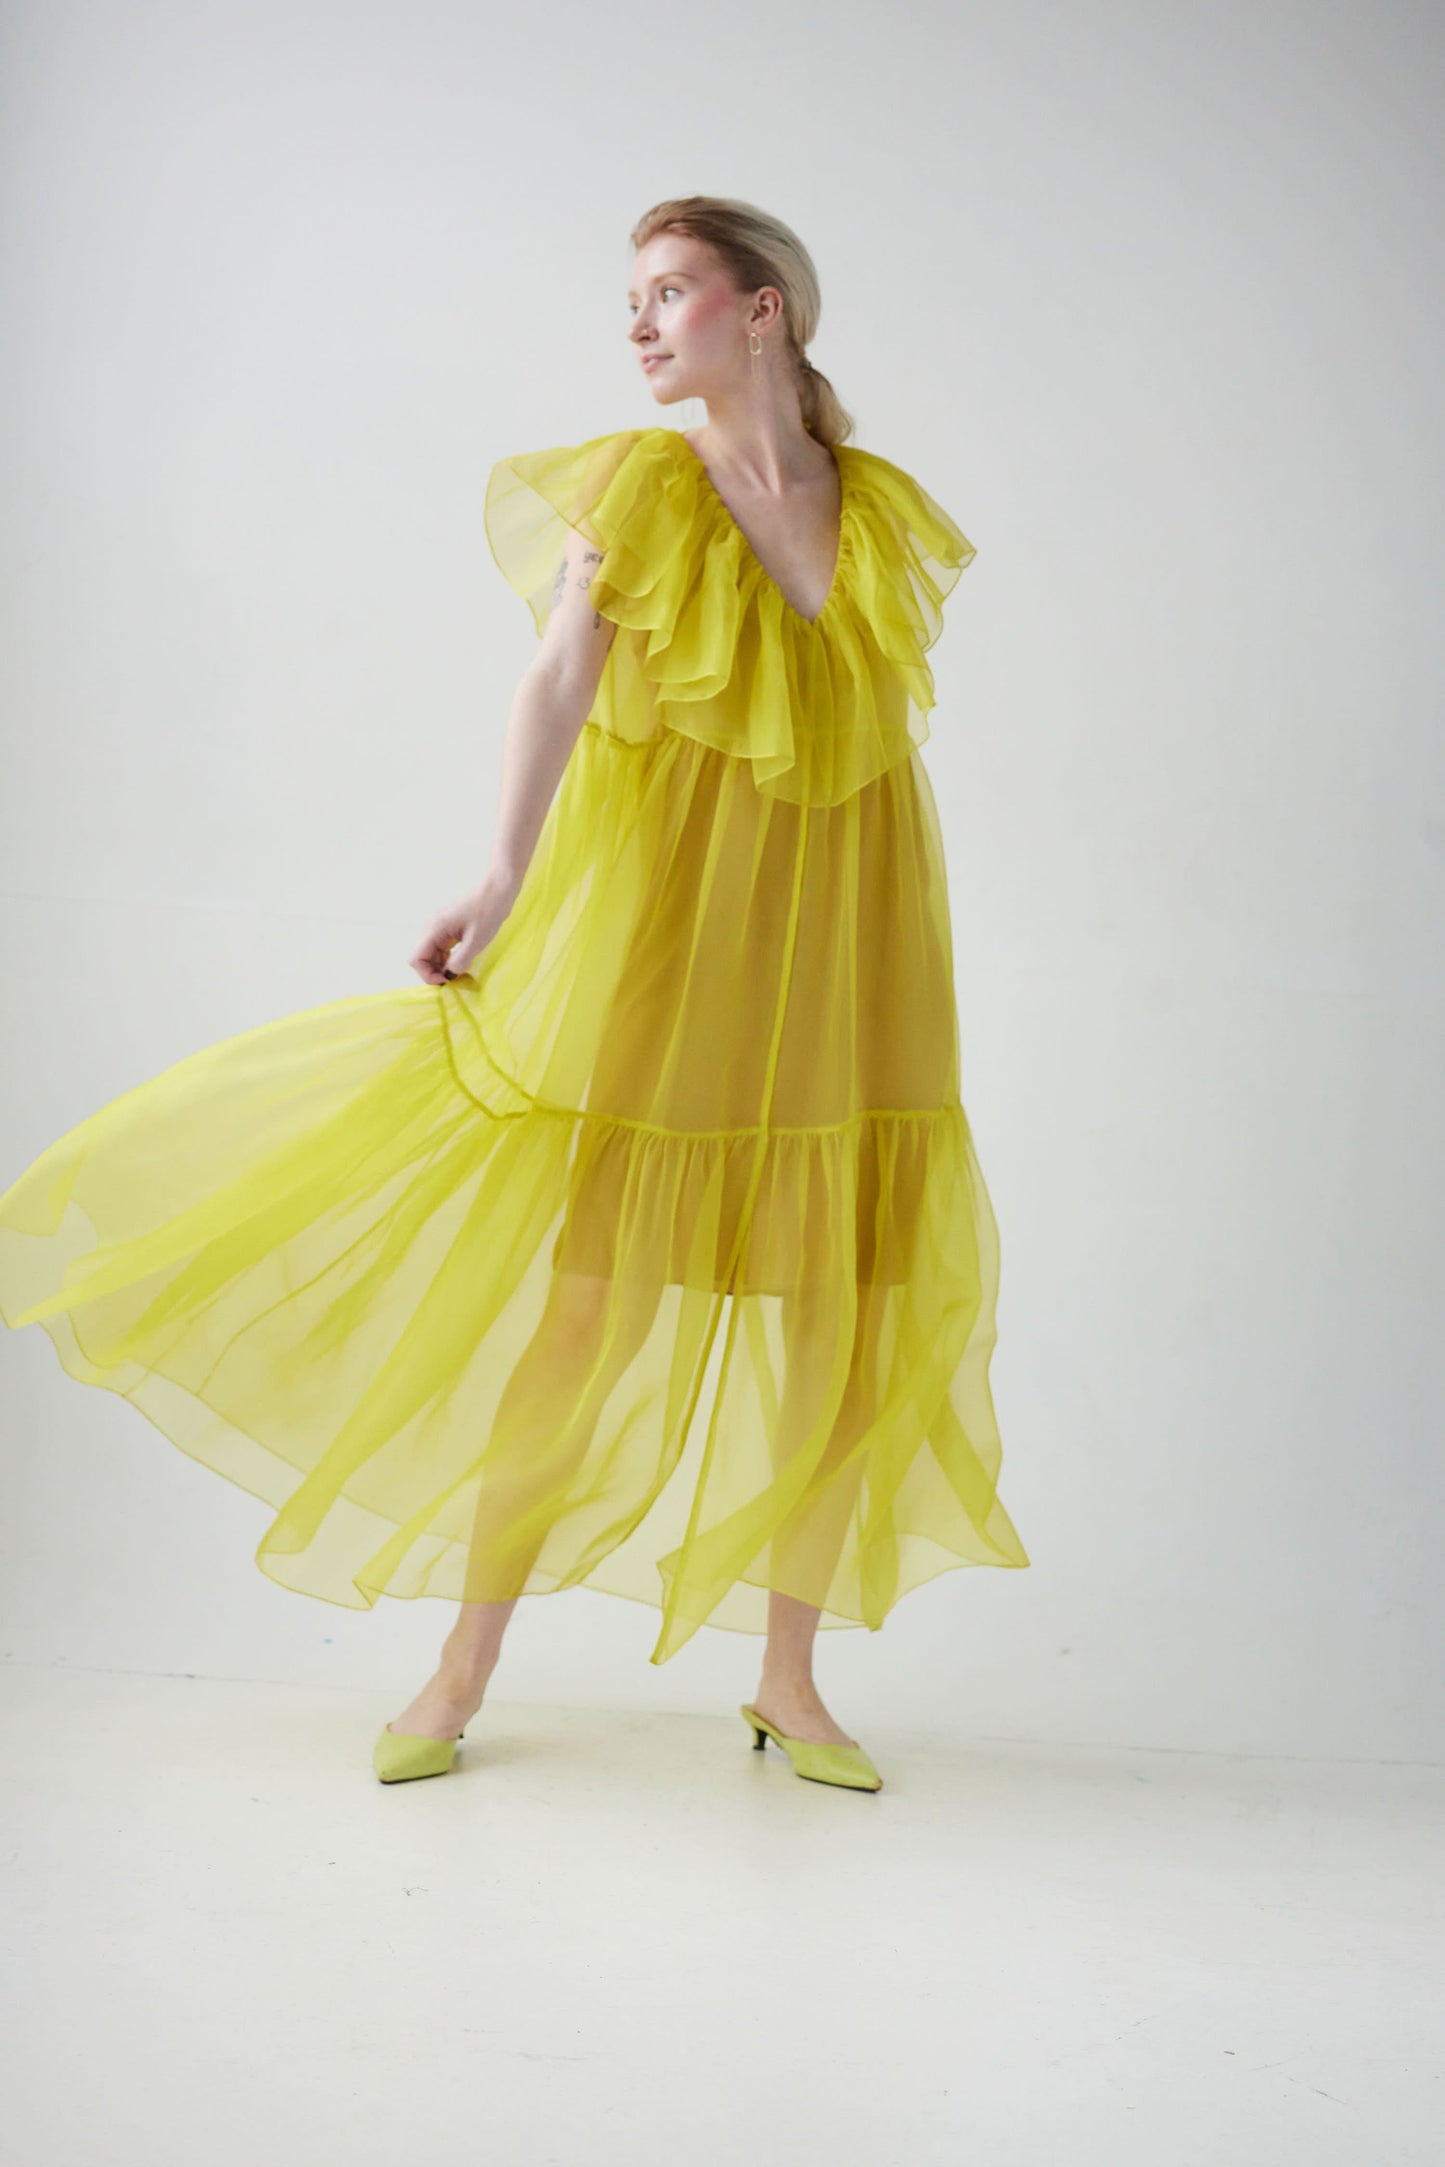 Papillon Dress in Silk Organza Dresses Christine Alcalay Citrine Organza XS/S 